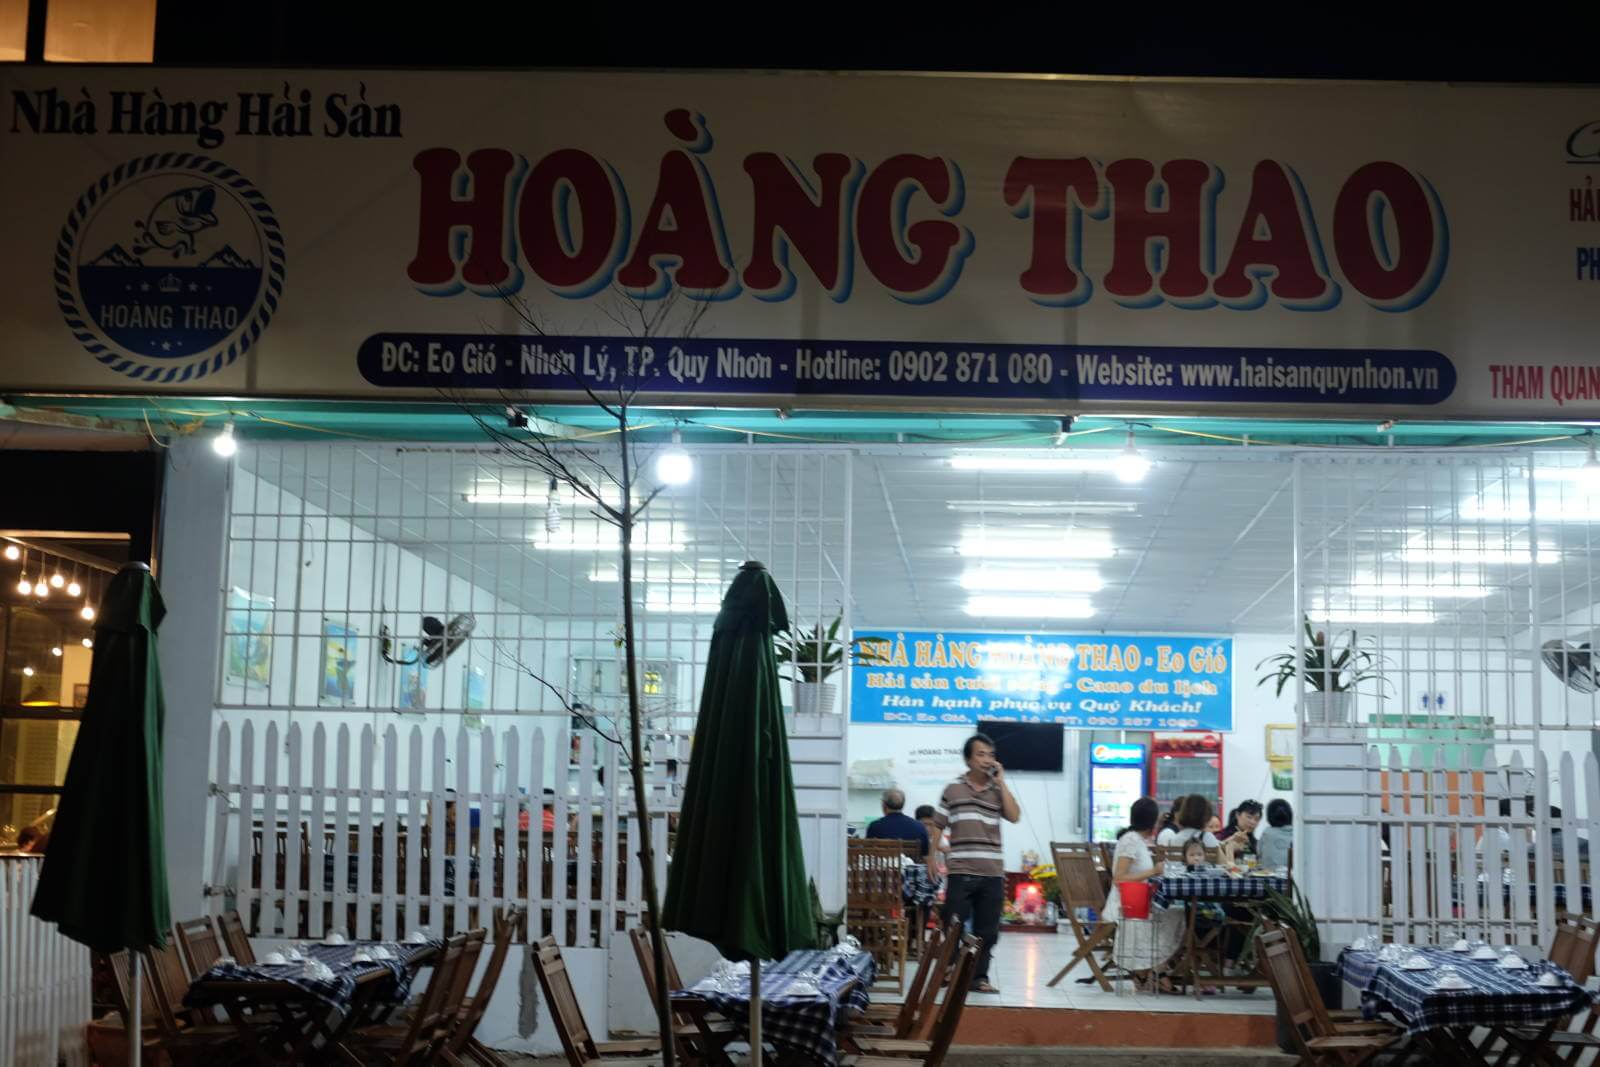 Nhà hàng hải sản Hoàng Thao – Eo Gió (ảnh: internet)